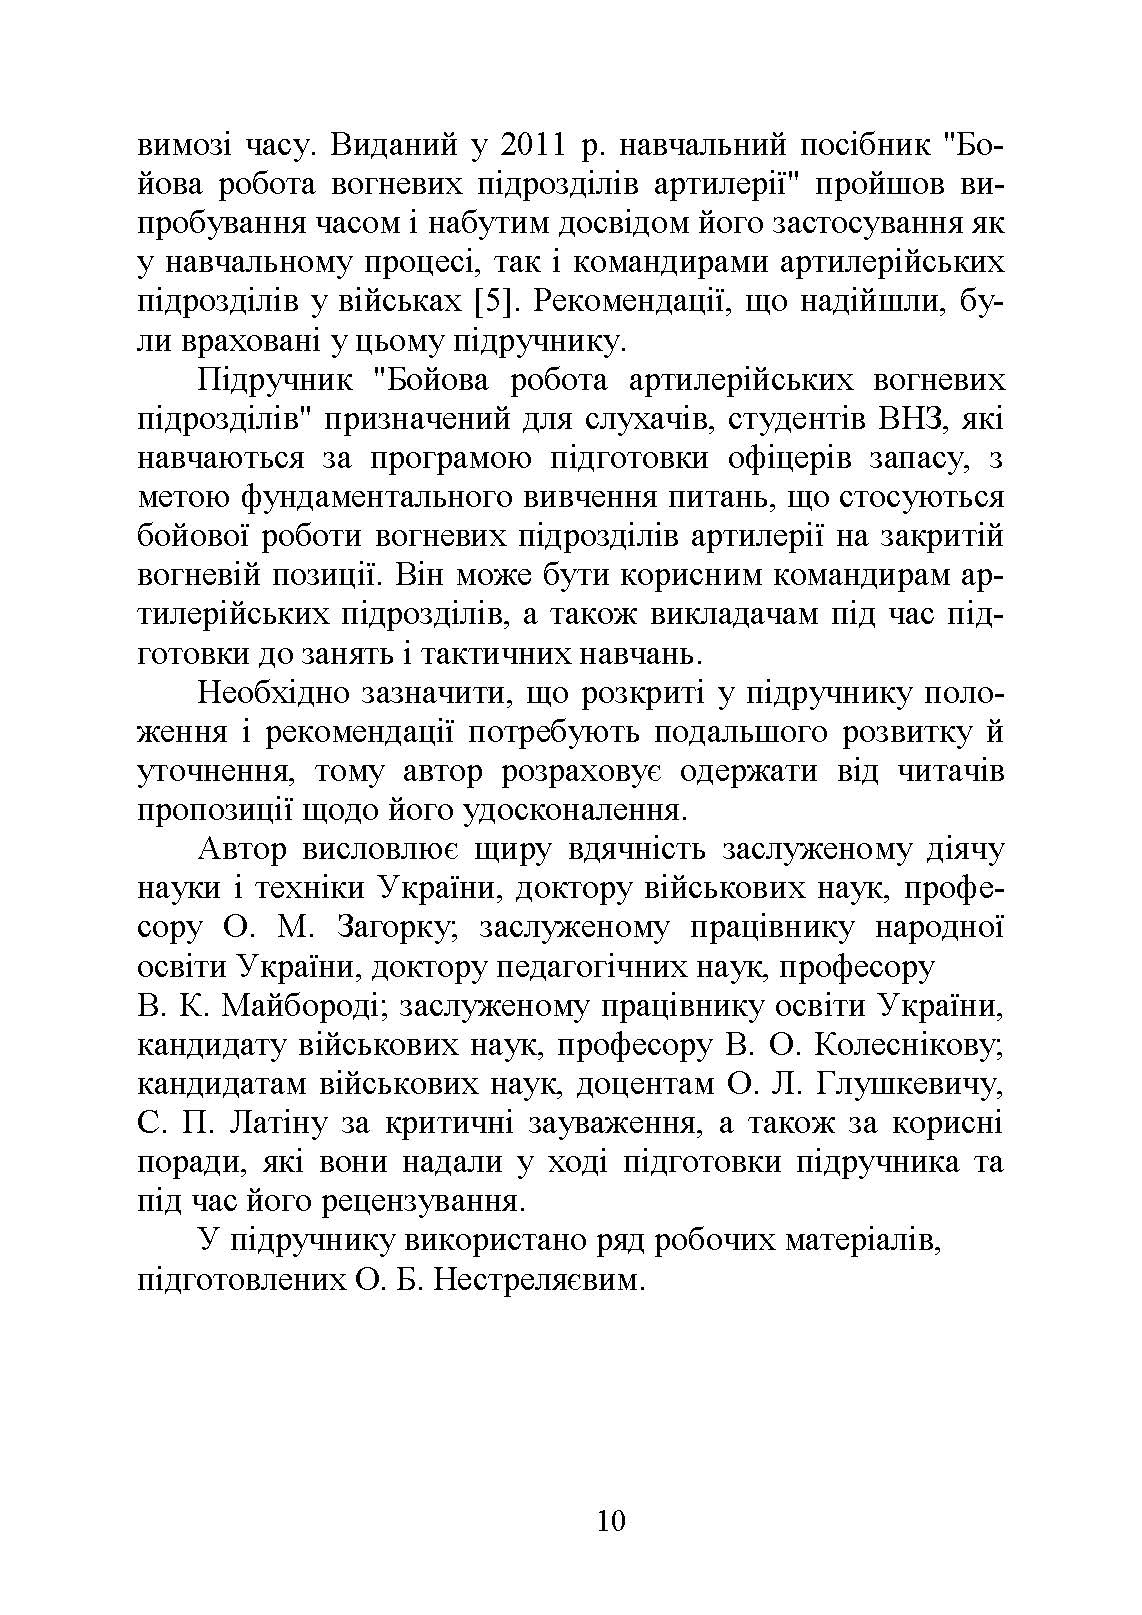 Бойова робота артилерійських вогневих підрозділів. Автор — П. Є. Трофименко. 